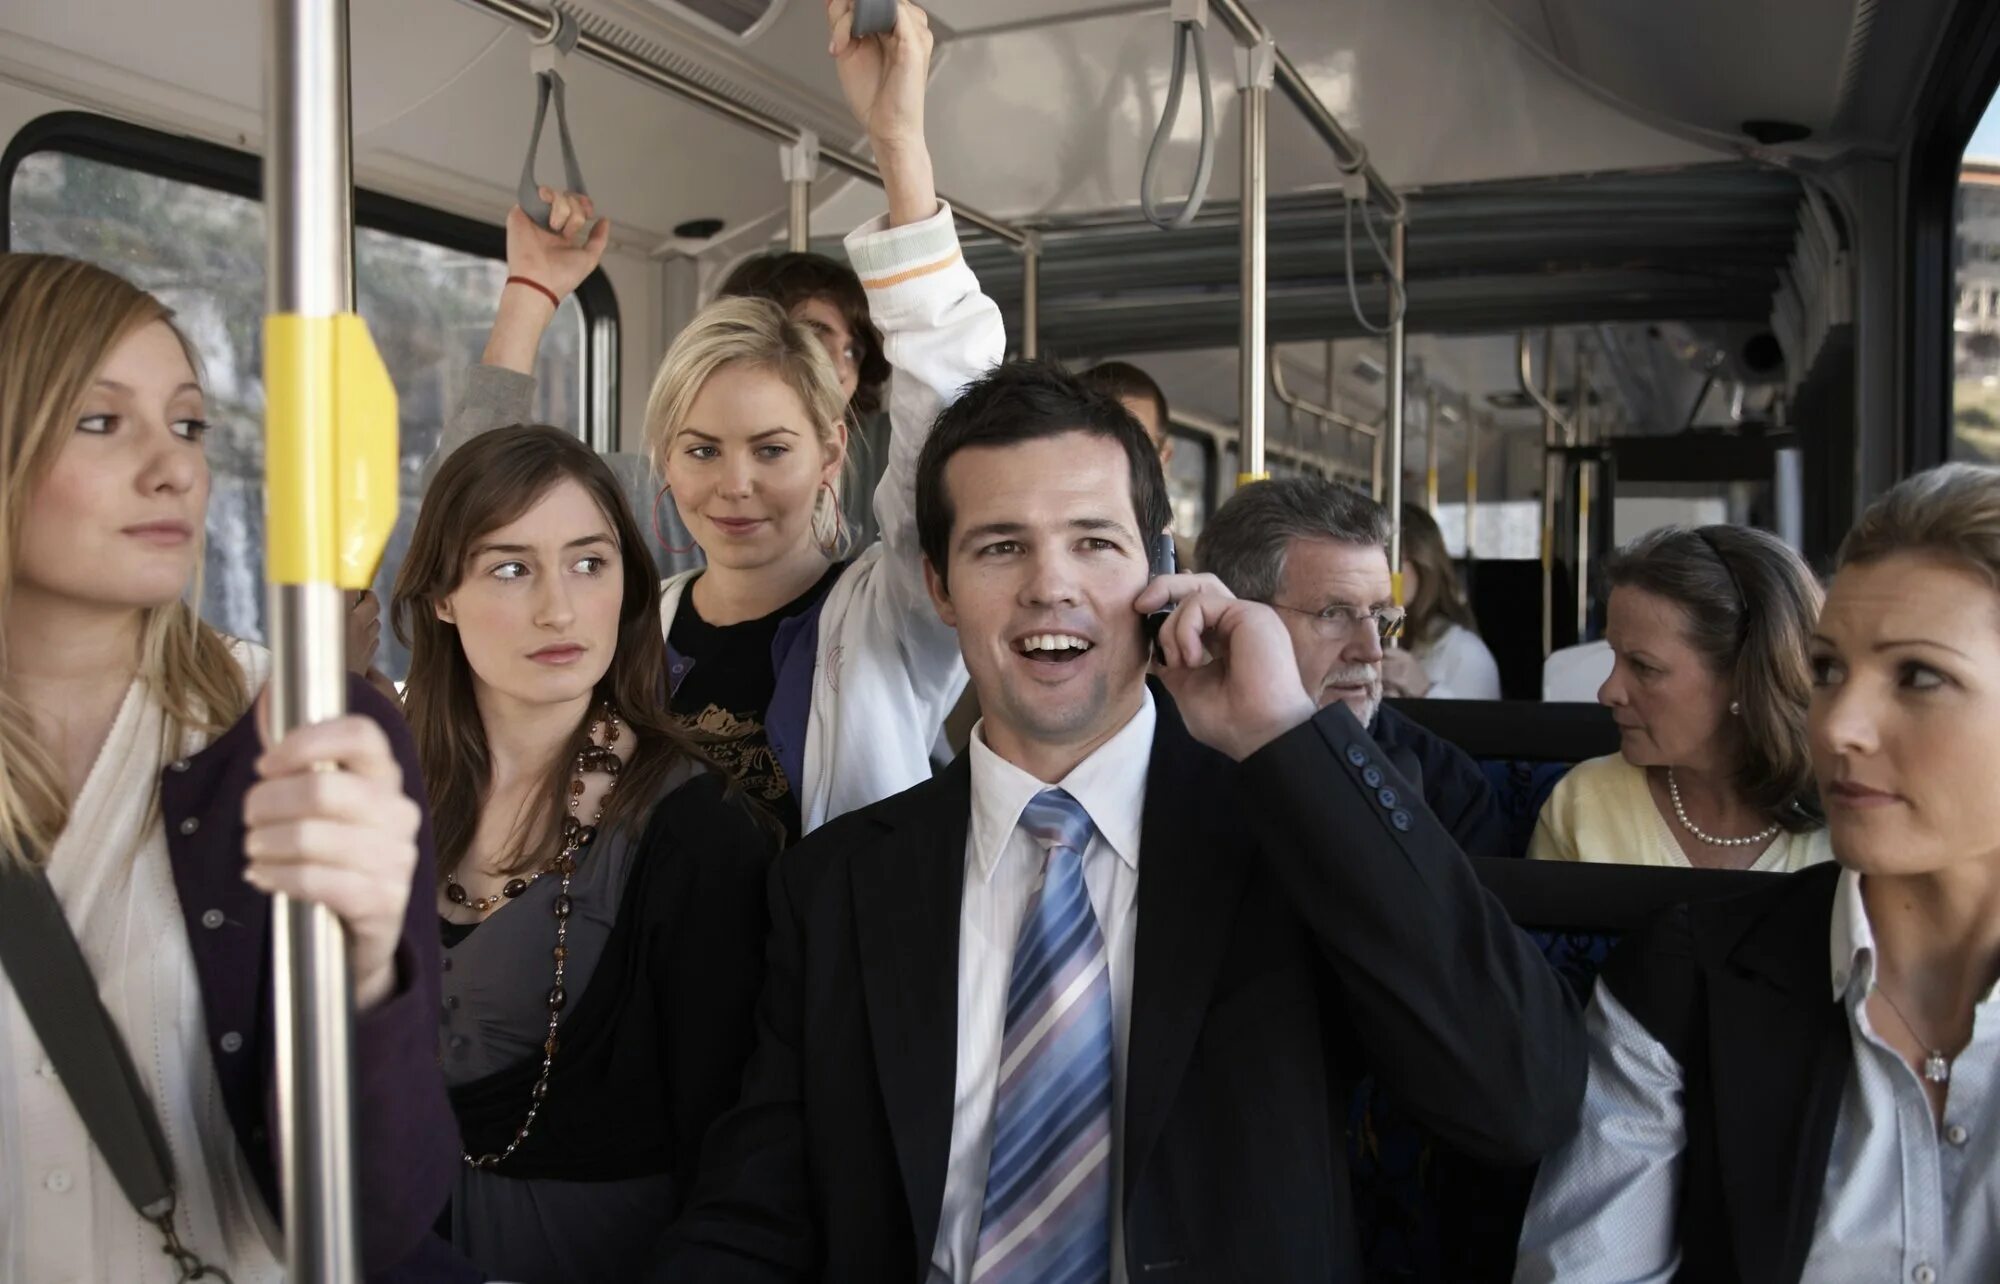 Можно 1 погромче. Люди в общественном транспорте. Разговор в общественном транспорте. Люди в автобусе. Этикет в общественном транспорте.